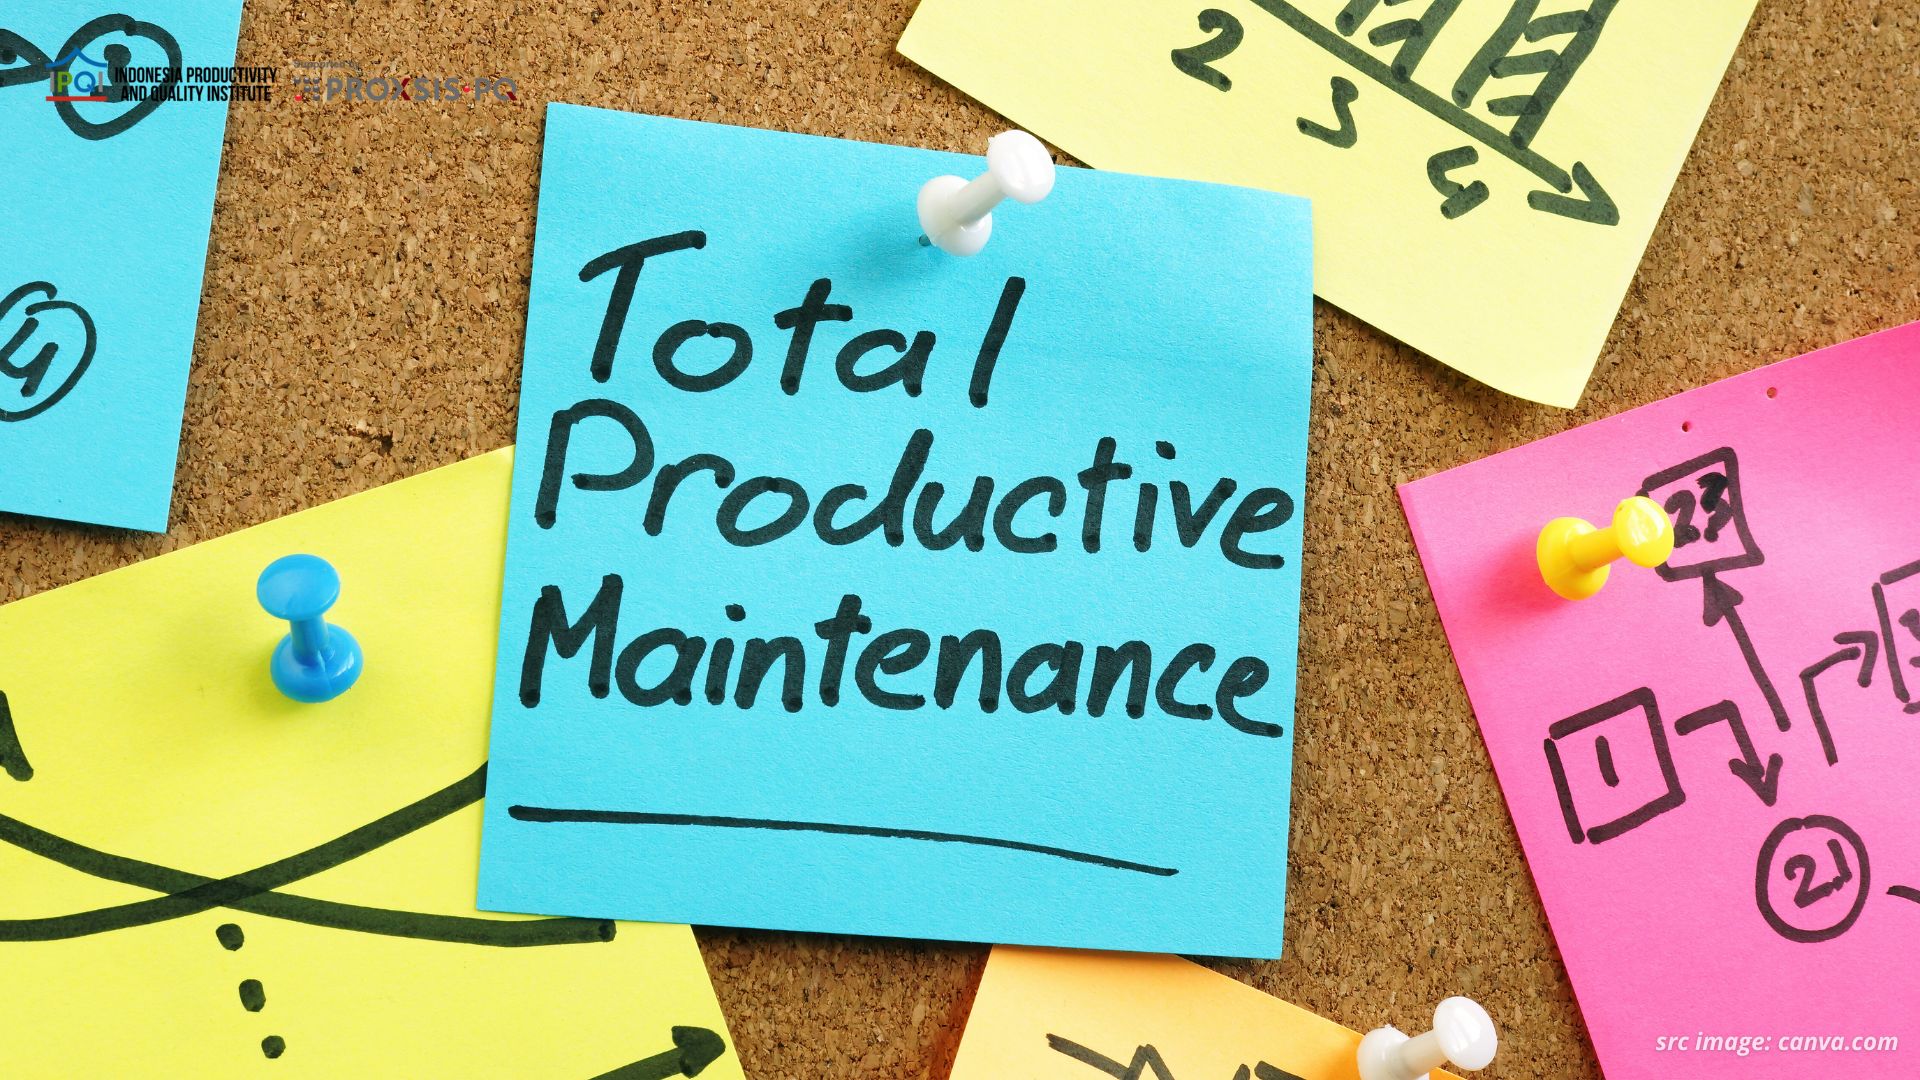 Total Productive Maintenance: Pengertian, Manfaat, Jenis, Contoh, dan Penerapannya